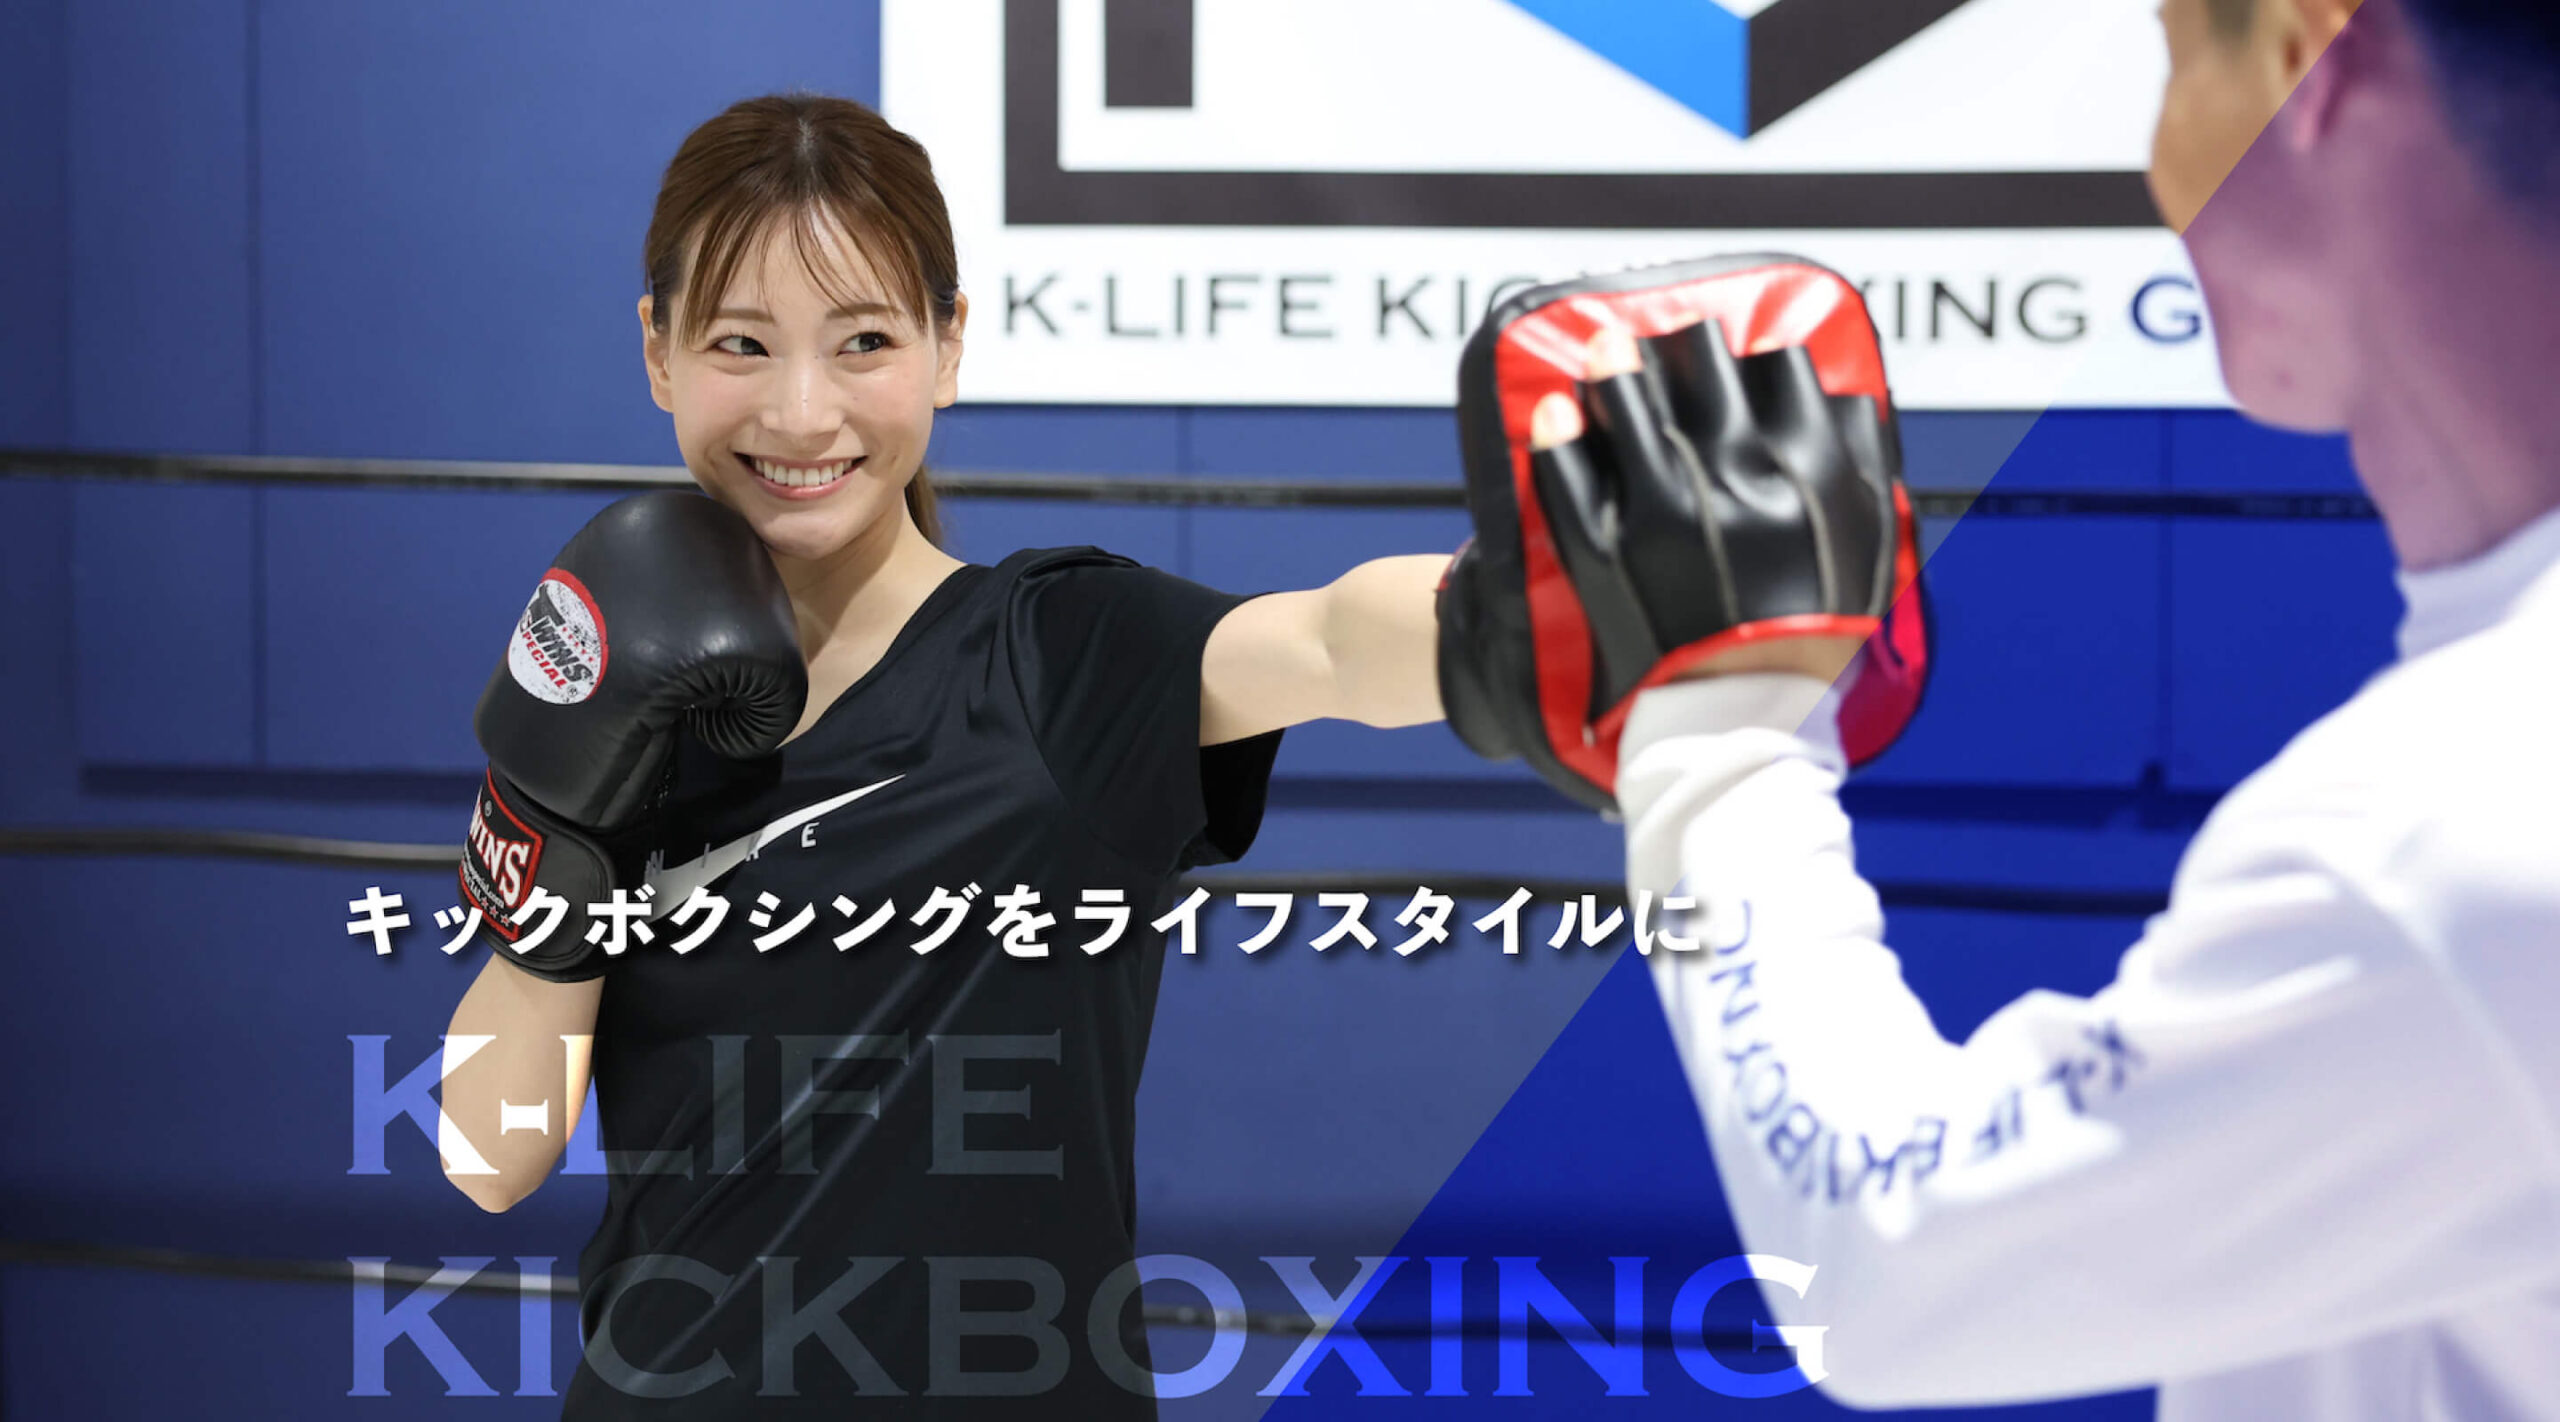 k-life kickboxing|キックボクシングをライフスタイルに